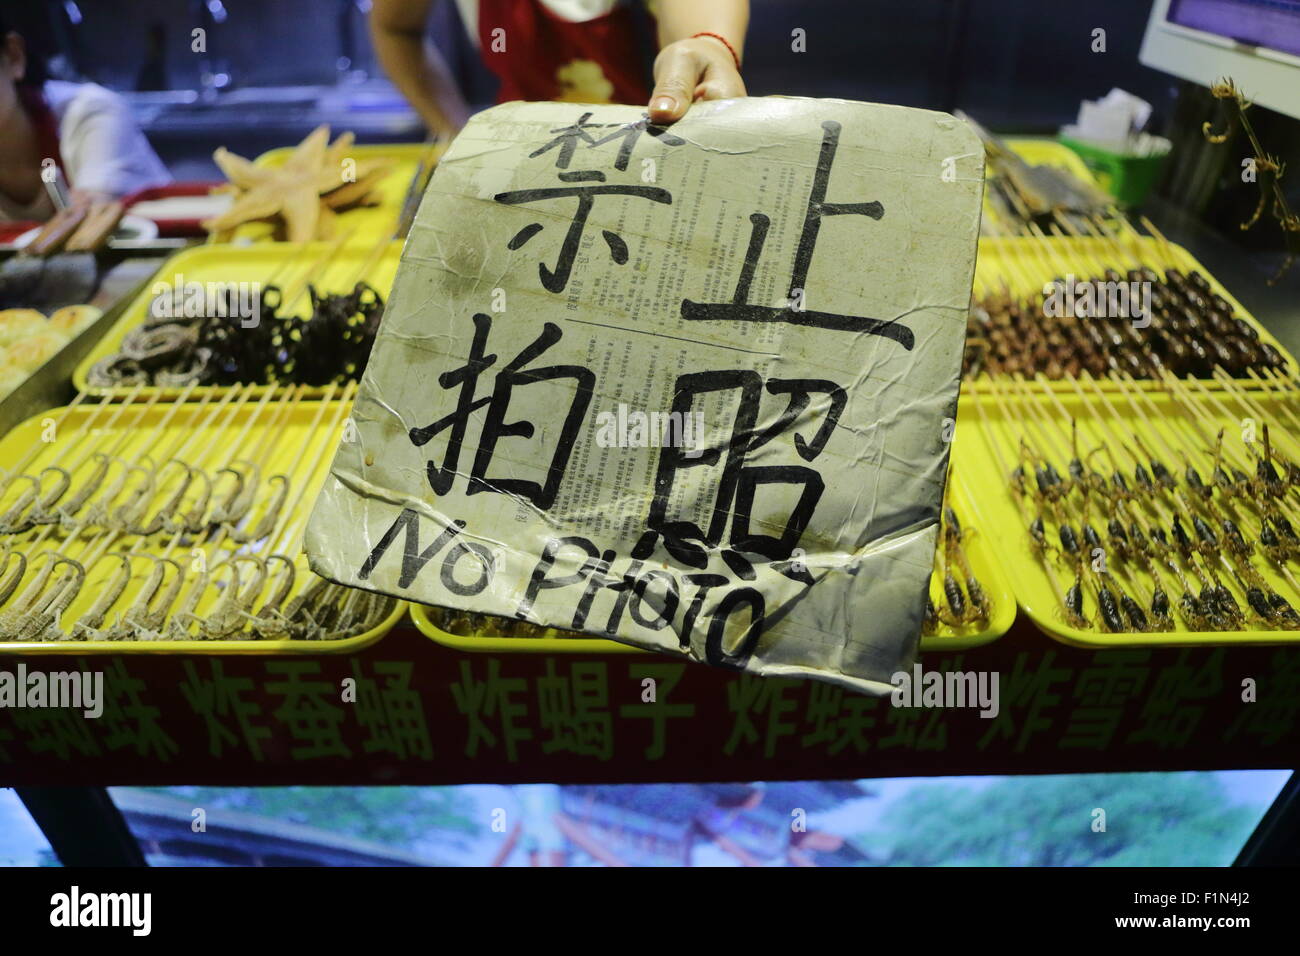 Stallo alimentare con cibi esotici in Wang Fu Jing, Pechino, Cina Foto Stock